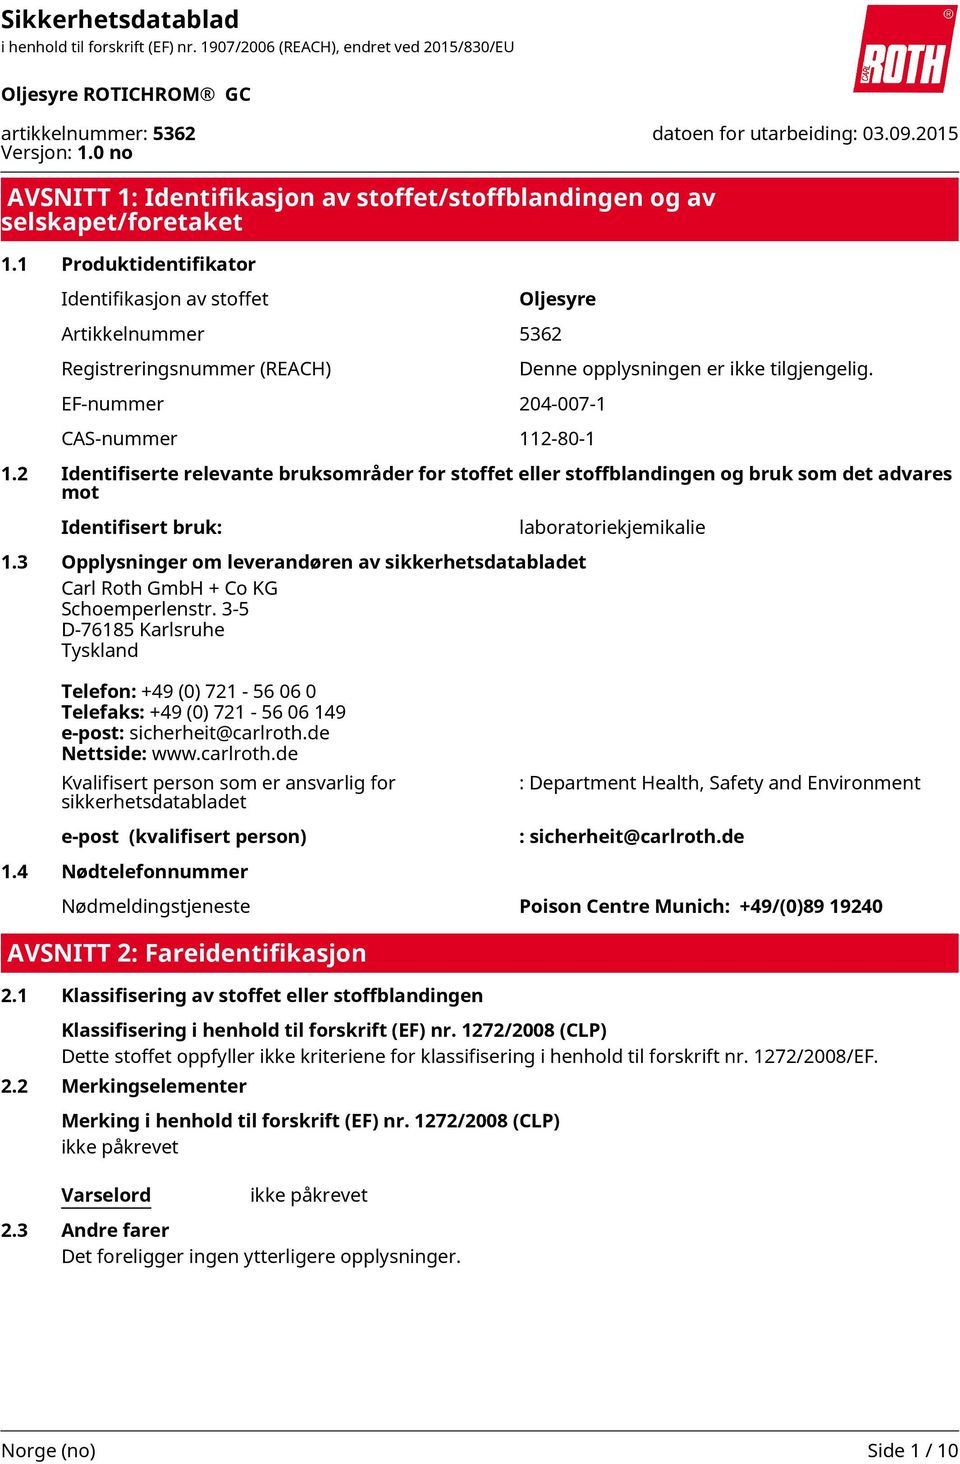 3-5 D-76185 Karlsruhe Tyskland Telefon: +49 (0) 721-56 06 0 Telefaks: +49 (0) 721-56 06 149 e-post: sicherheit@carlroth.de Nettside: www.carlroth.de Klassifisering i henhold til forskrift (EF) nr.